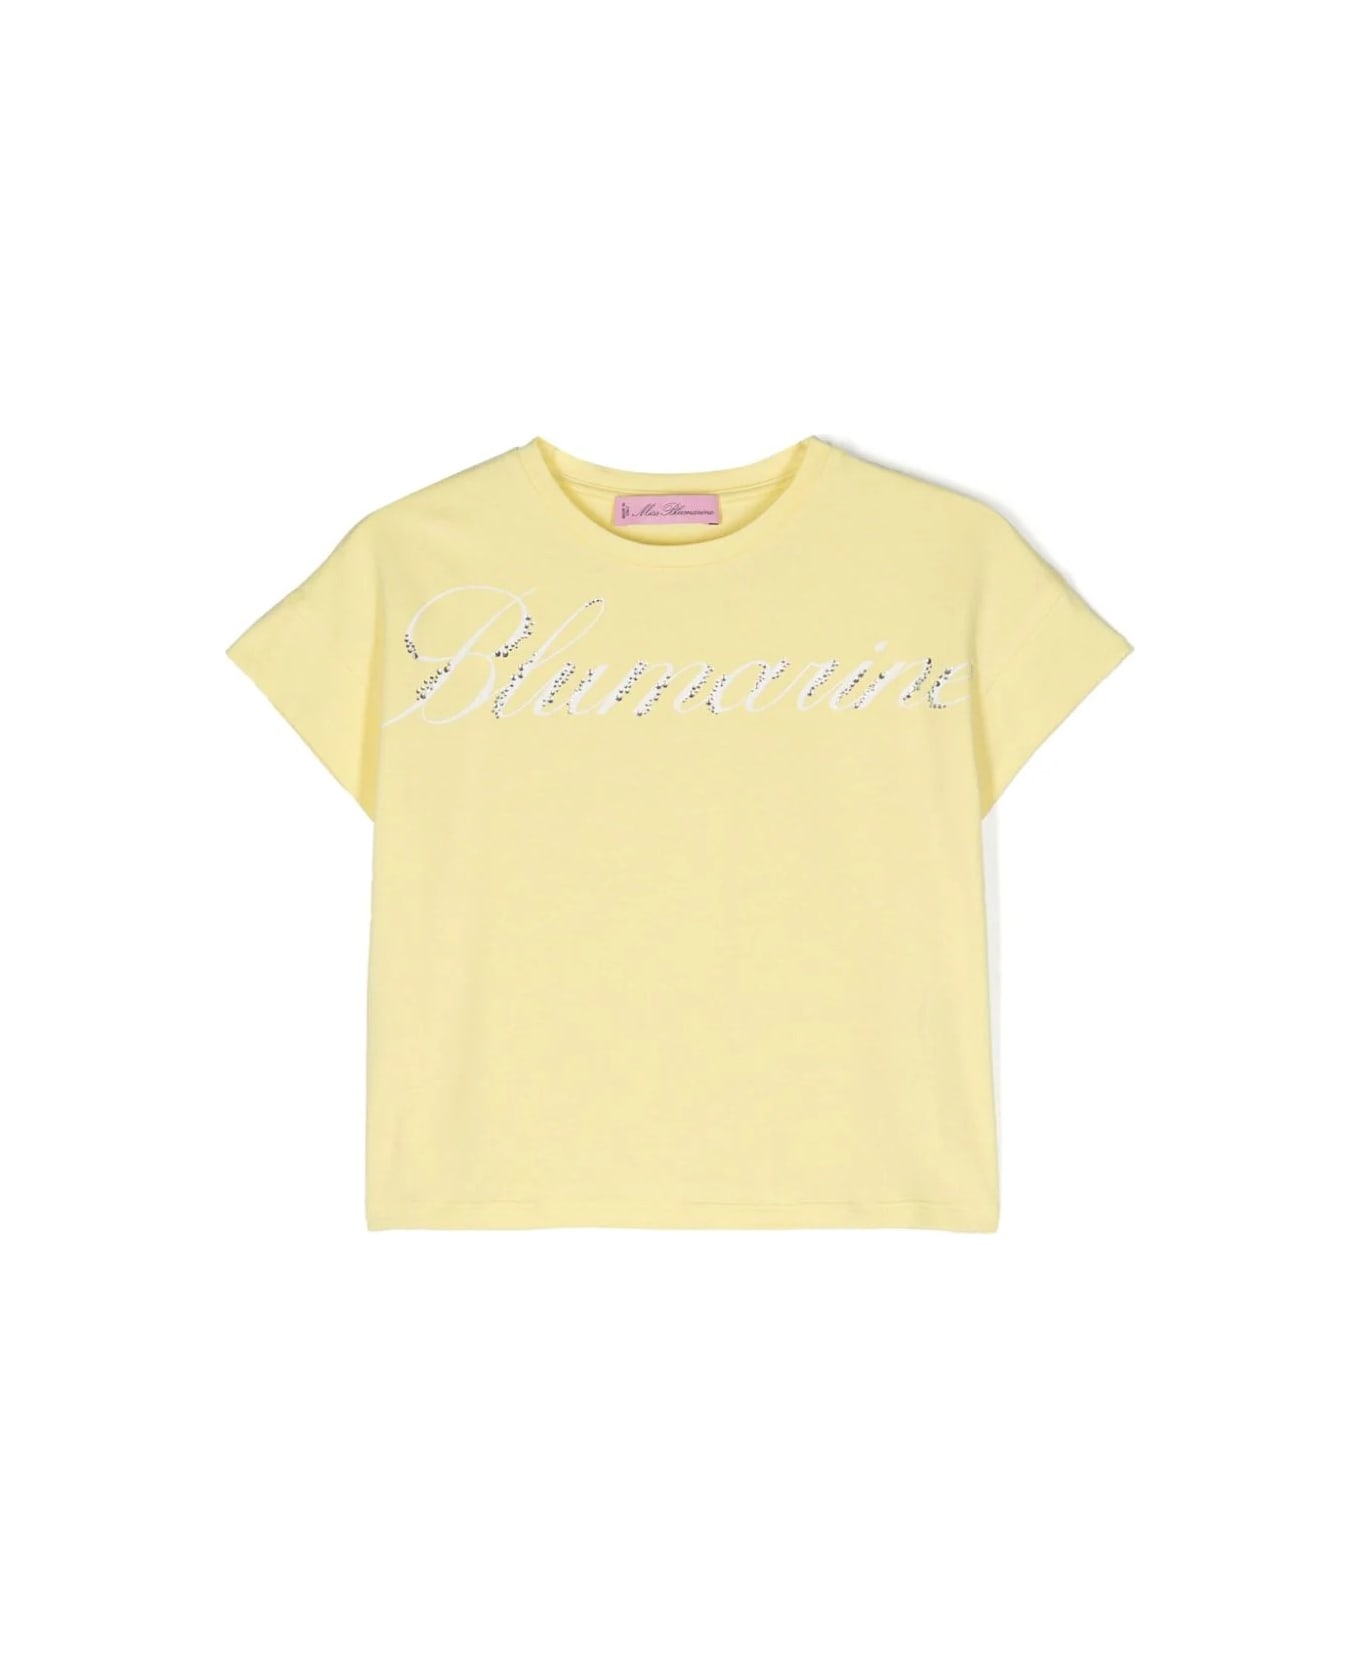 Miss Blumarine Pastel Yellow T-shirt With Logo Print With Rhinestones - Yellow